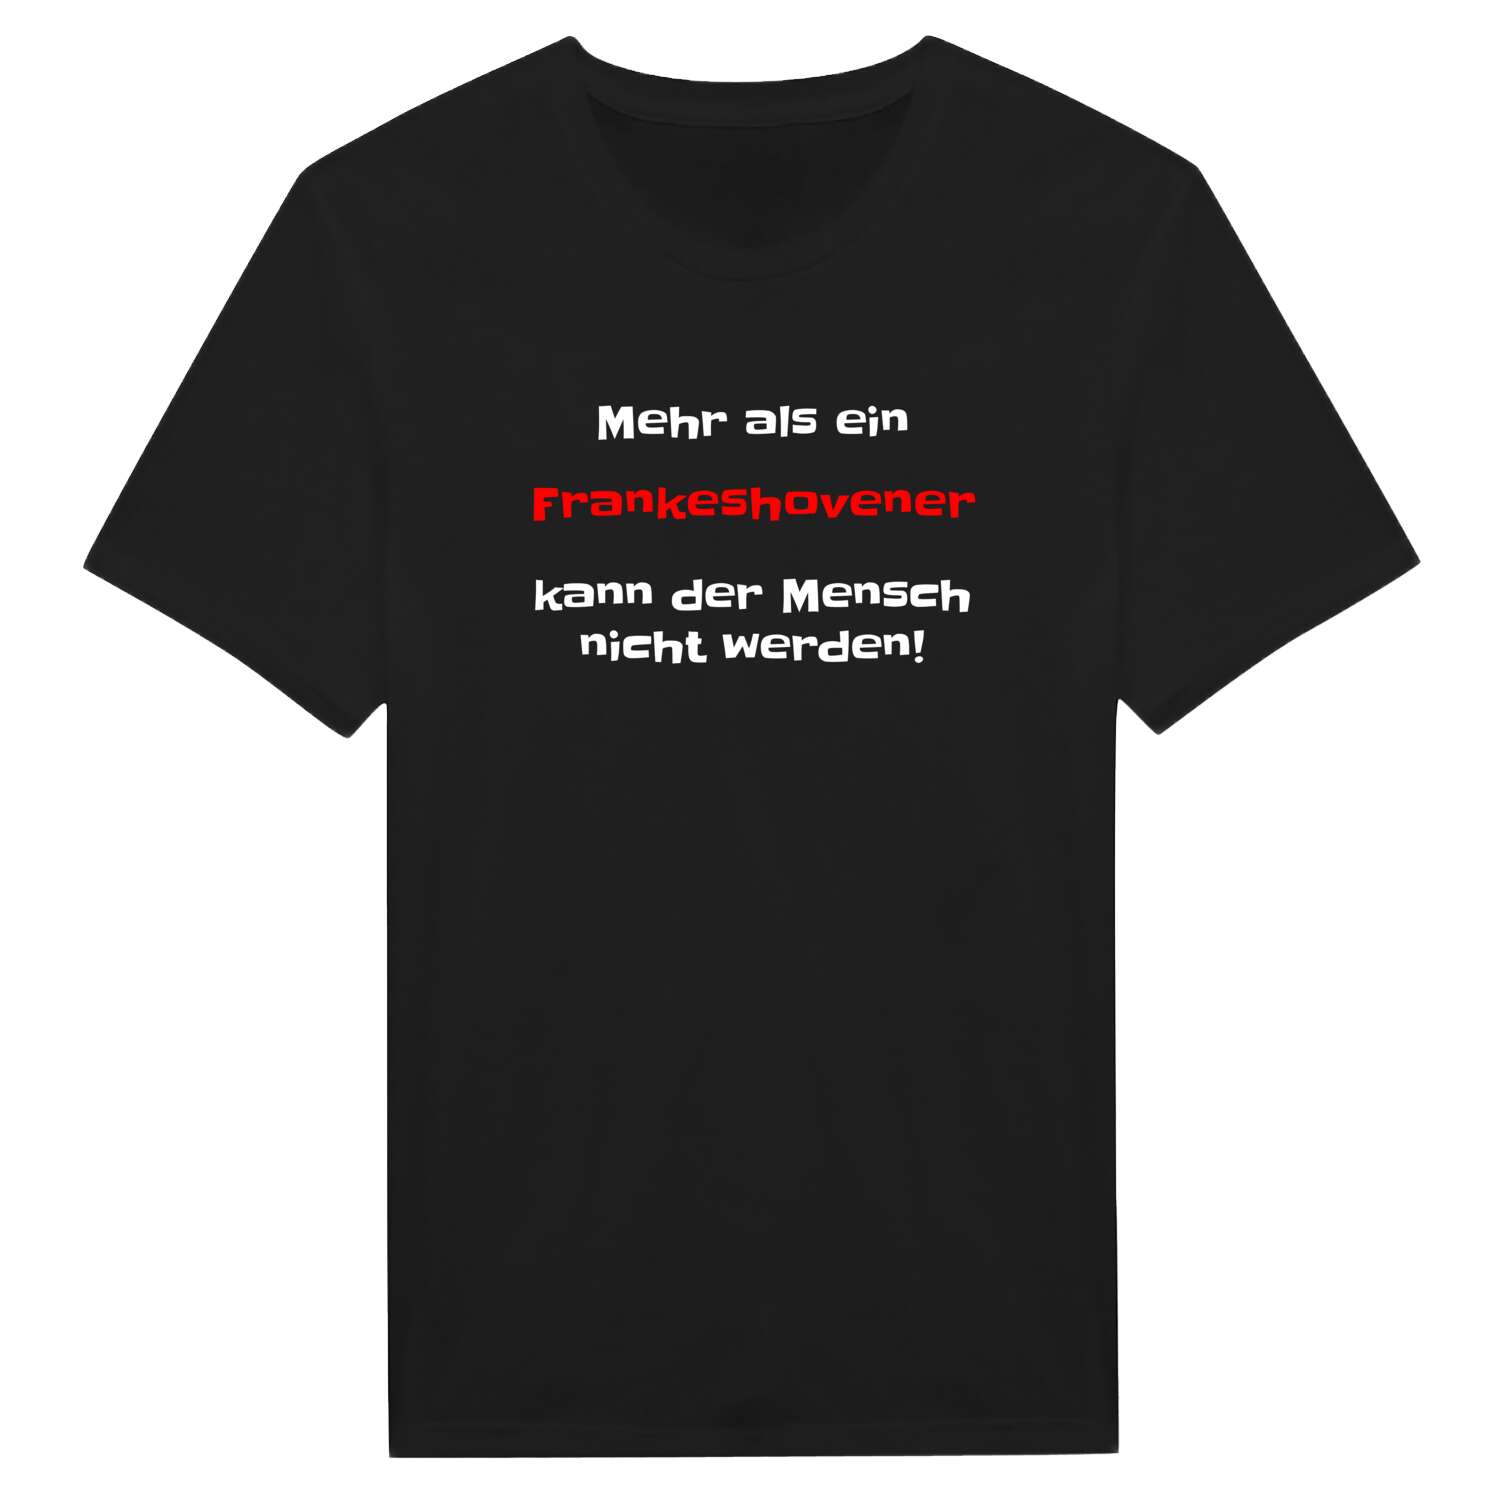 Frankeshoven T-Shirt »Mehr als ein«